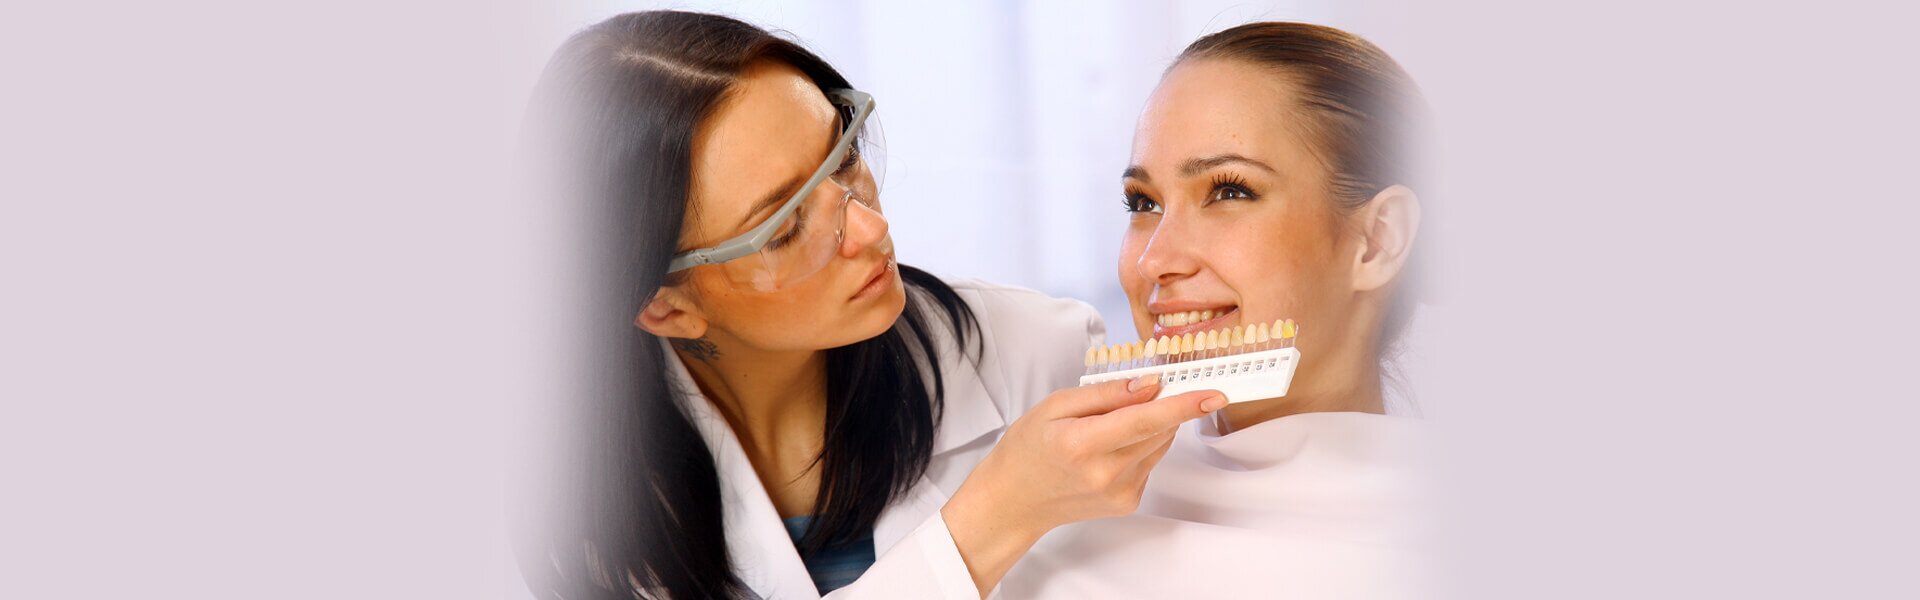 How Long Does It Take To Put Veneers On Teeth?